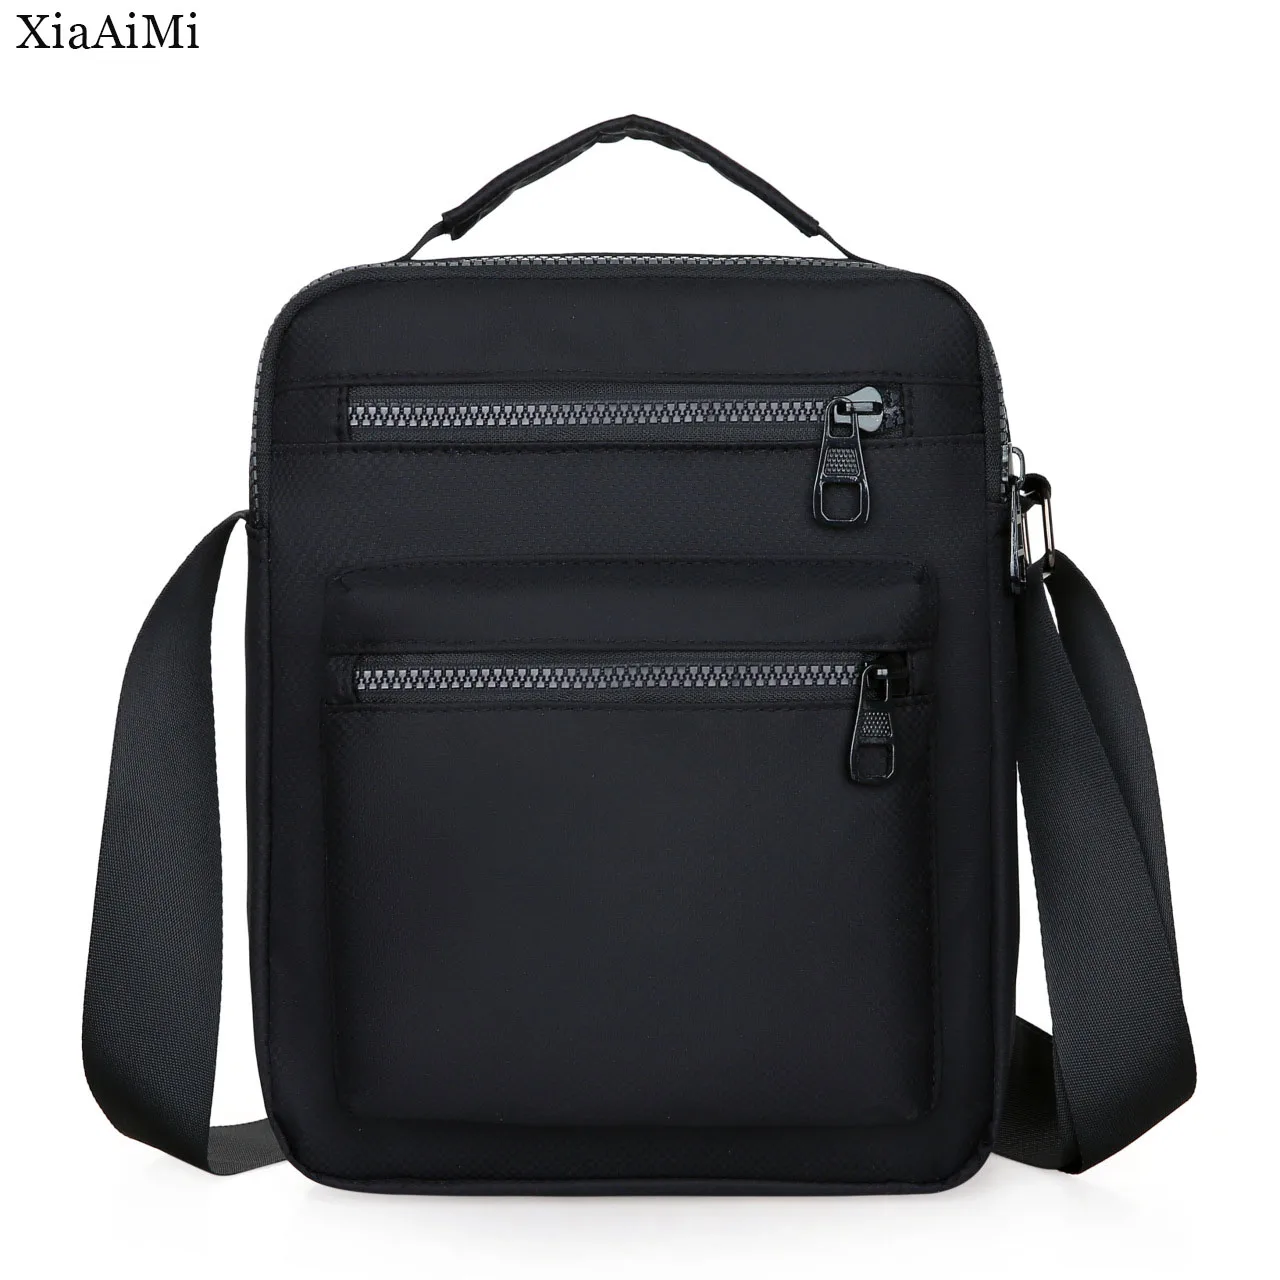 New Men's Shoulder Bag Casual Sports Nylon Messenger Bag Black Work Travel Men's Small Bag Chest Bag Solid Color